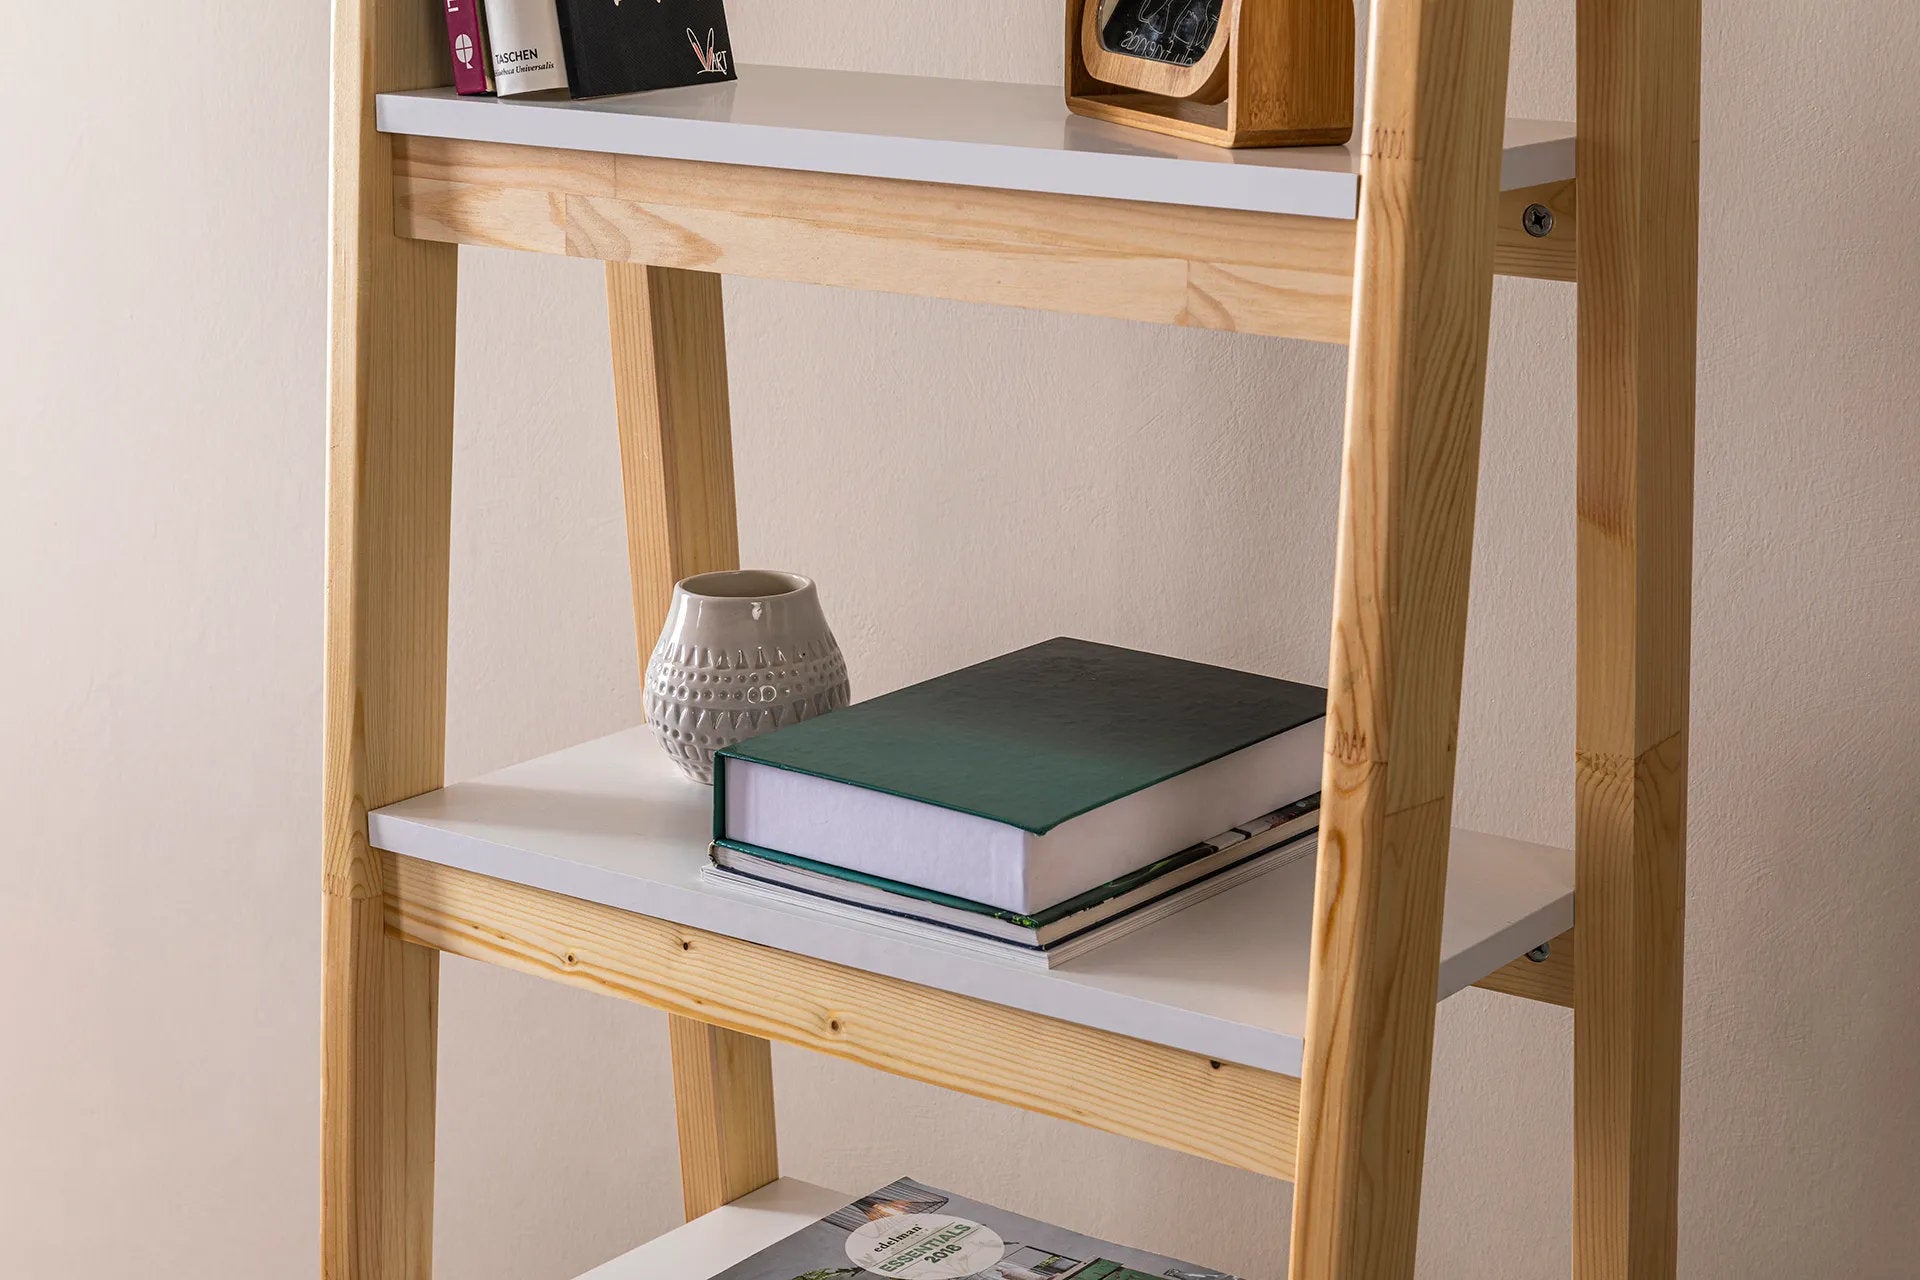 UGOS Ladder Bookcase | Oak Color  | 63'' H X 26'' W X 16'' D